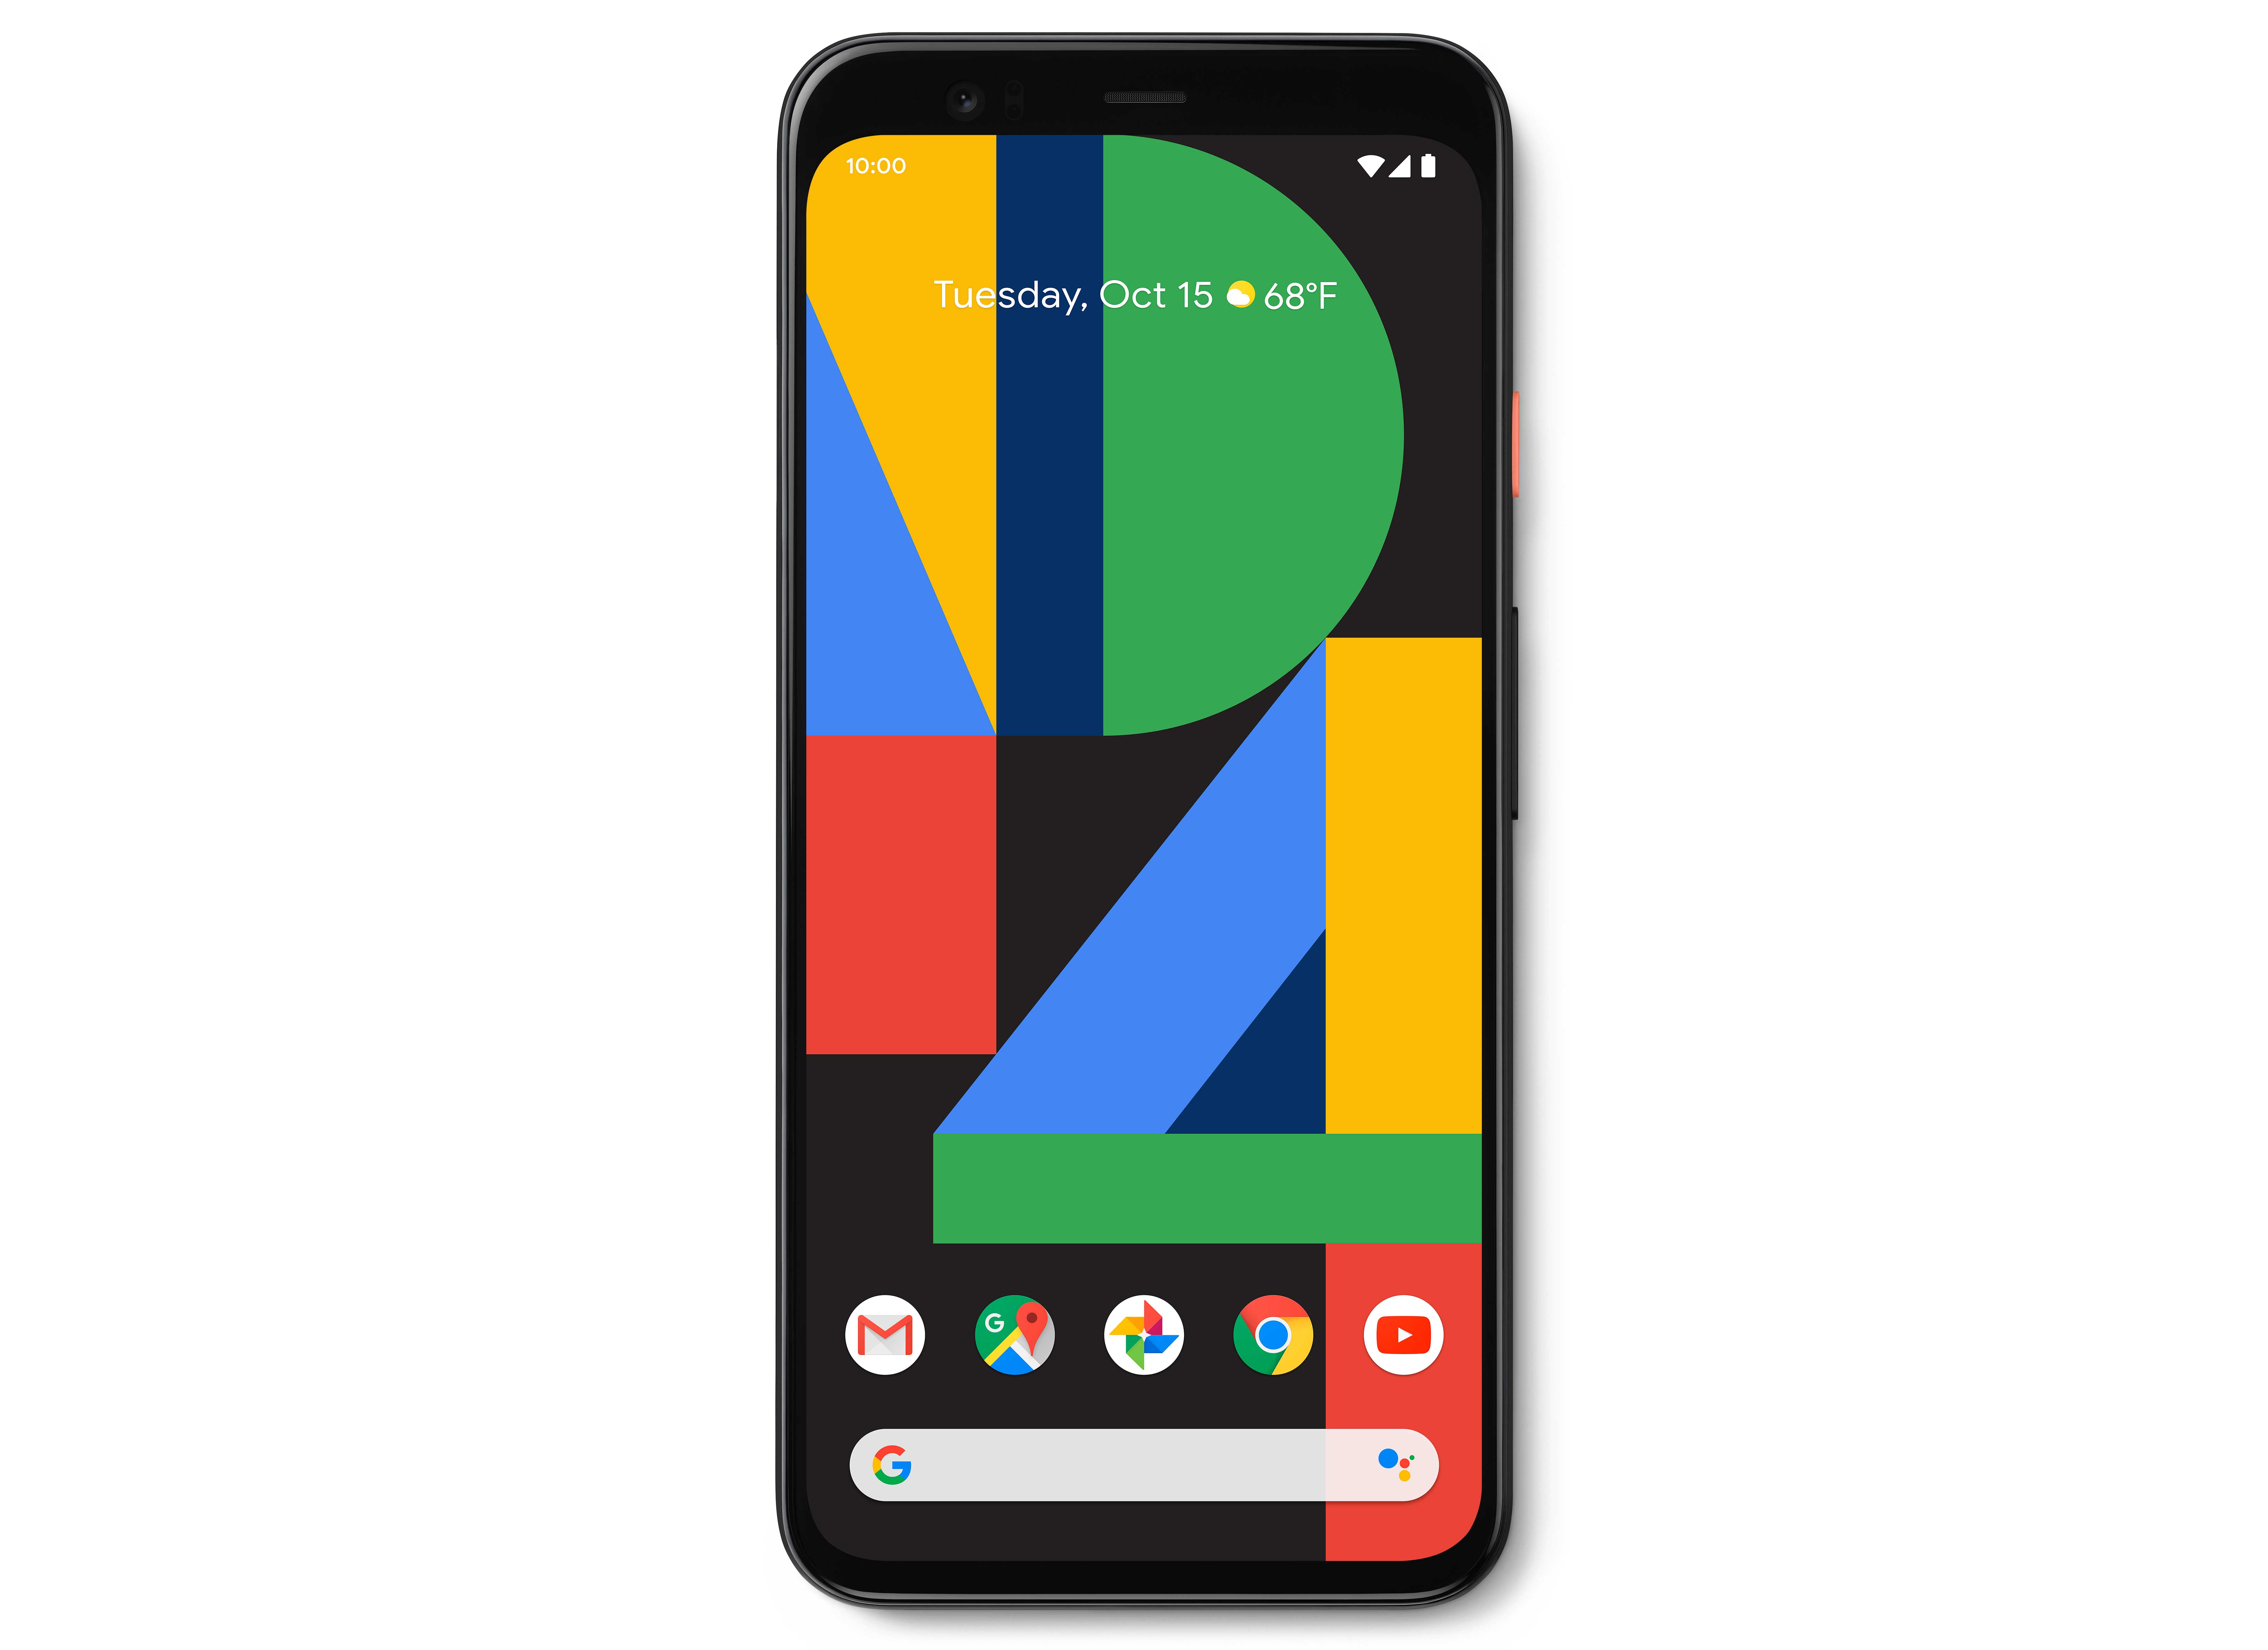 The Google Pixel 4 smartphone